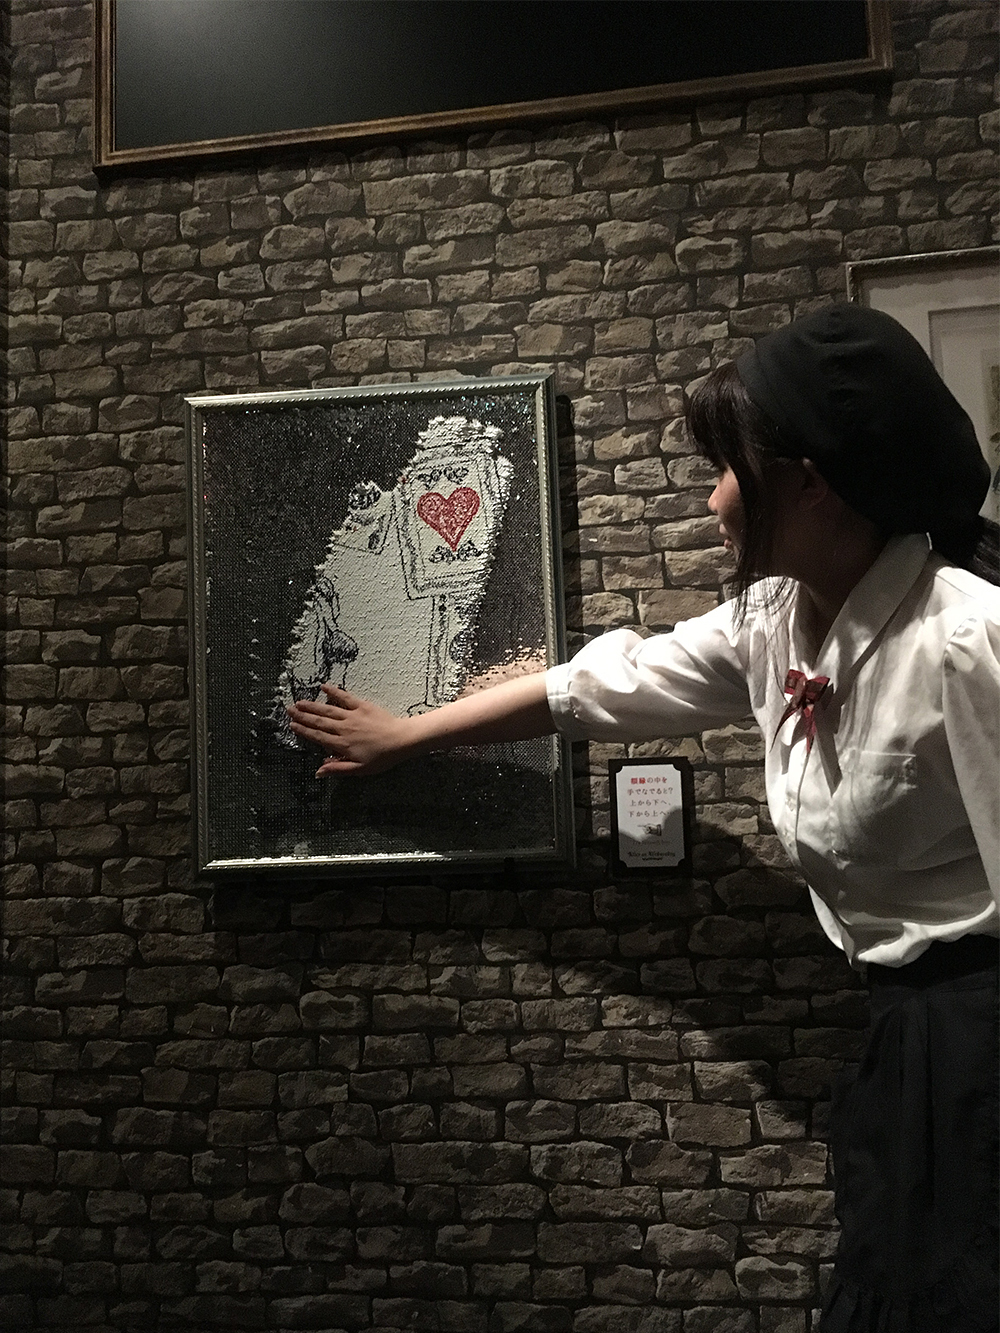 水曜日のアリス ふれると現れ また消える 魔法の絵画 東京 名古屋 大阪 福岡の4店舗に設置 株式会社ビルジャンのプレスリリース